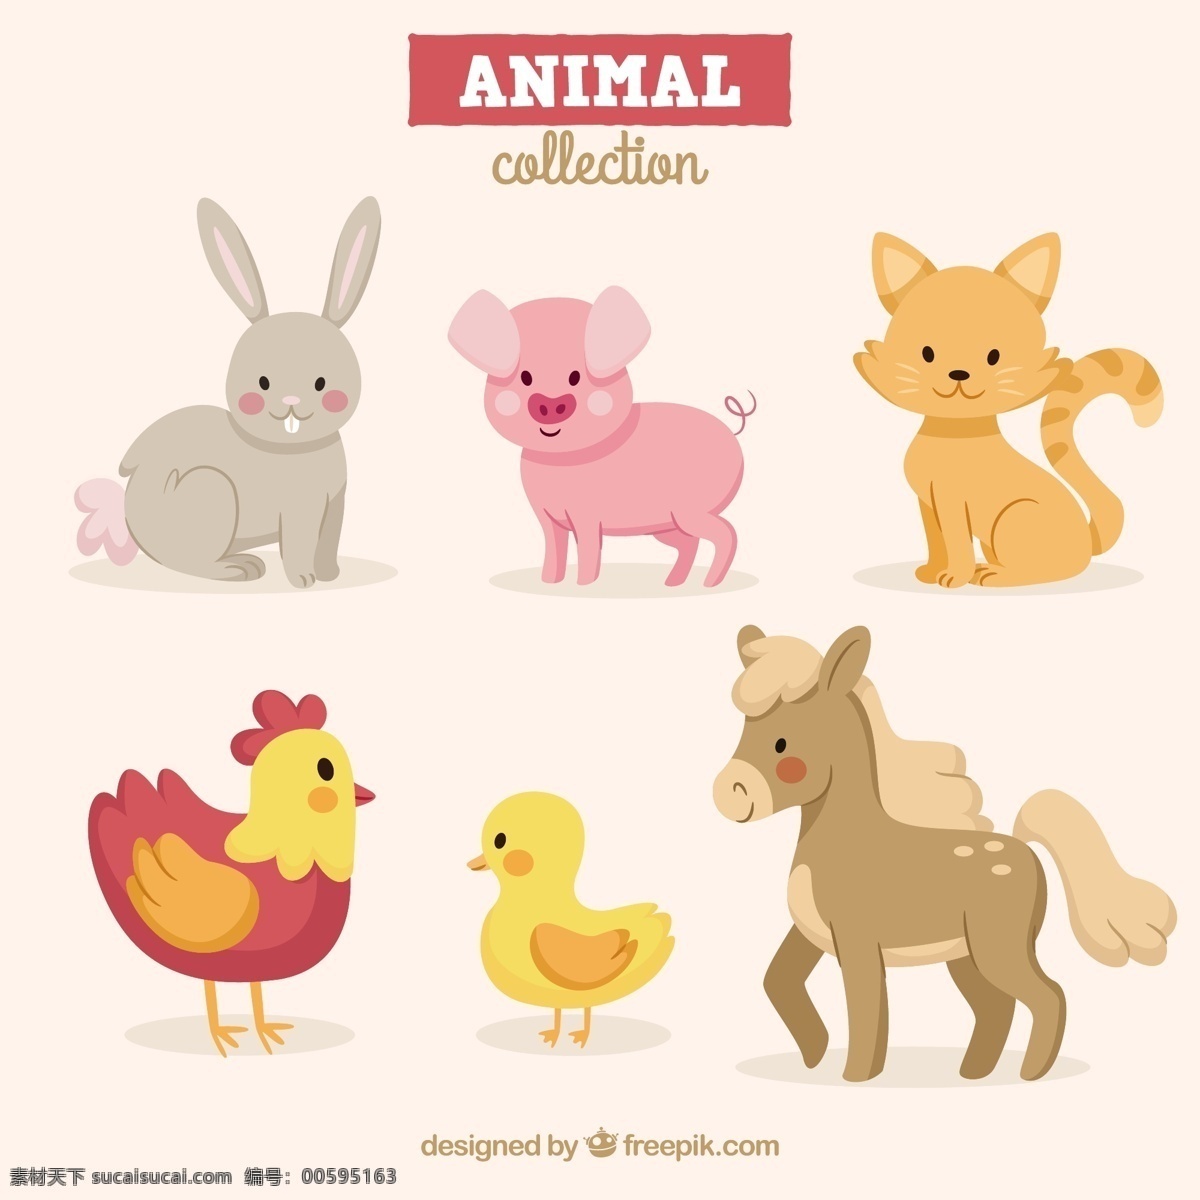 套 平坦 有趣 动物 自然 卡通 猫 农场 鸡 可爱 快乐 多彩 马 扁 兔 猪 平面设计 可爱的动物 农场动物 包